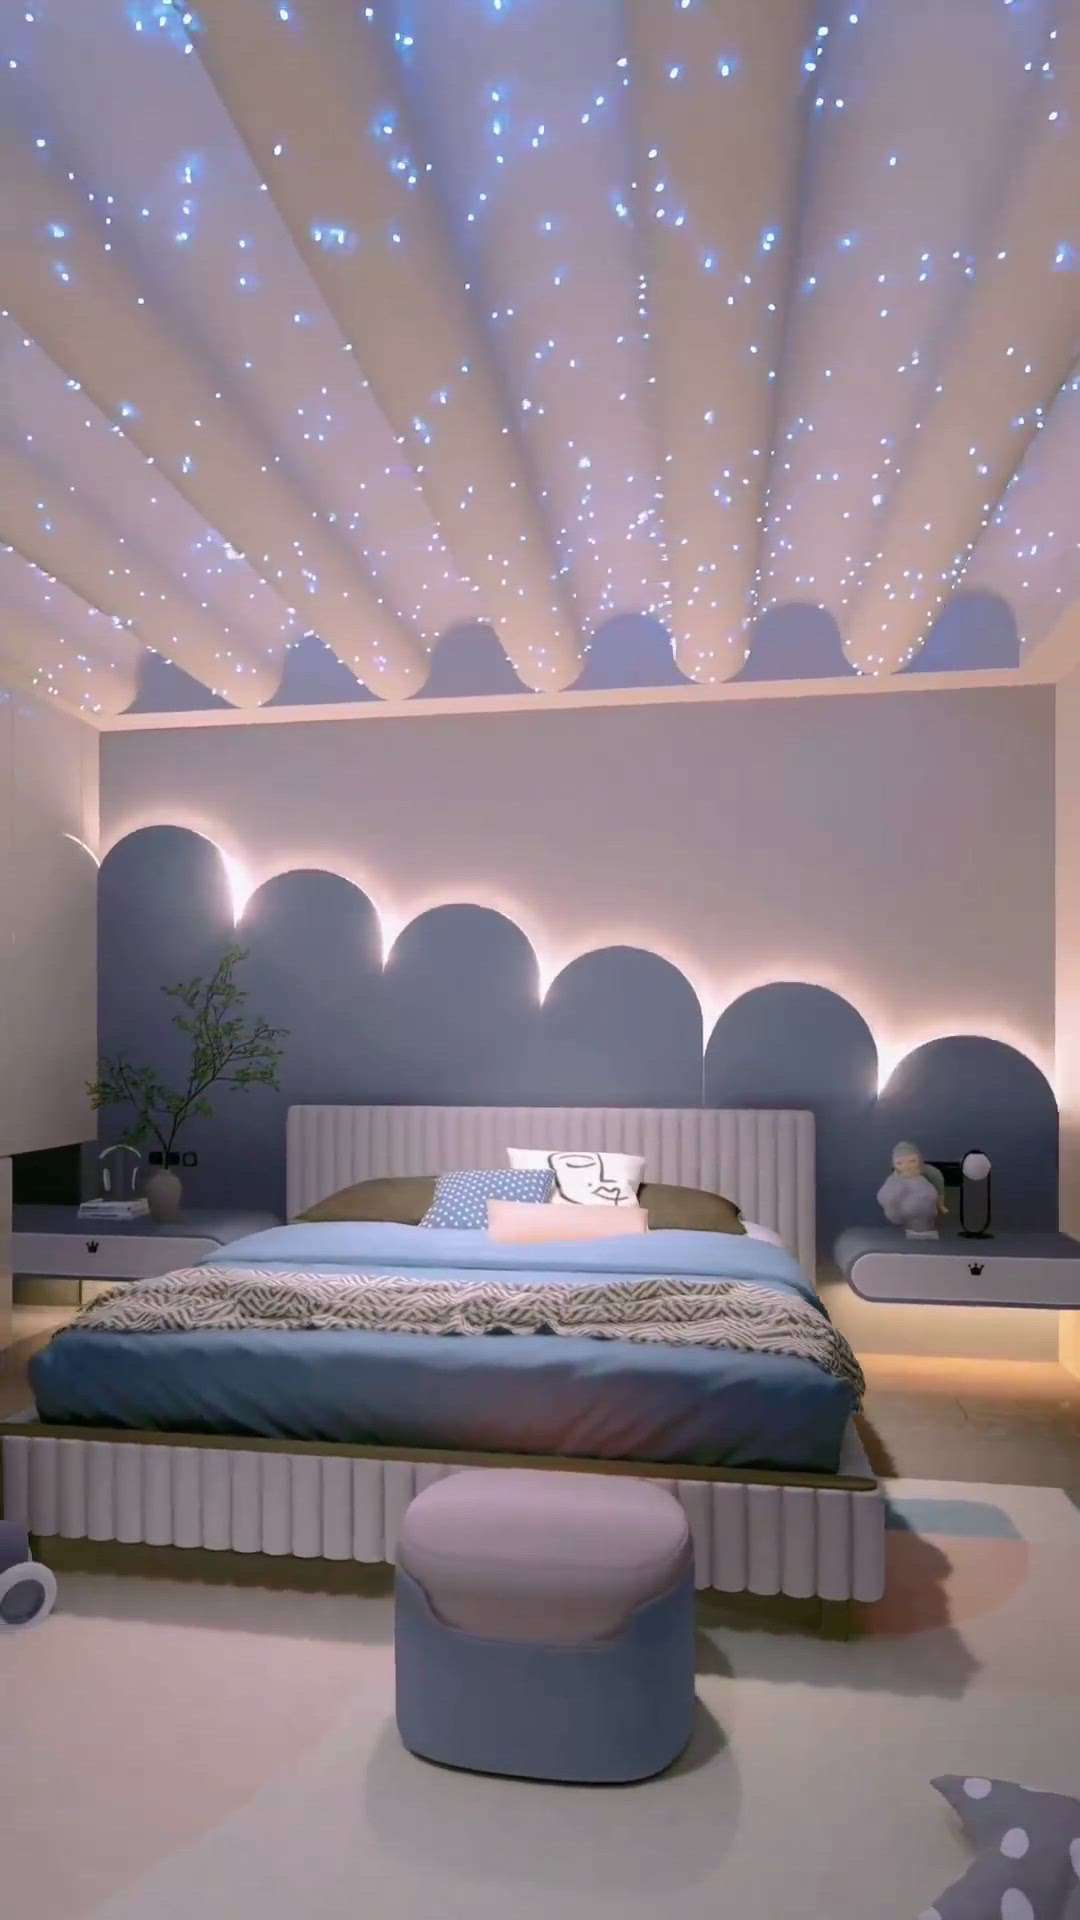 #KingsizeBedroom  #BedroomDecor  #MasterBedroom  #BedroomIdeas  #furnitures  #InteriorDesigner  #urbandesign  #HomeDecor